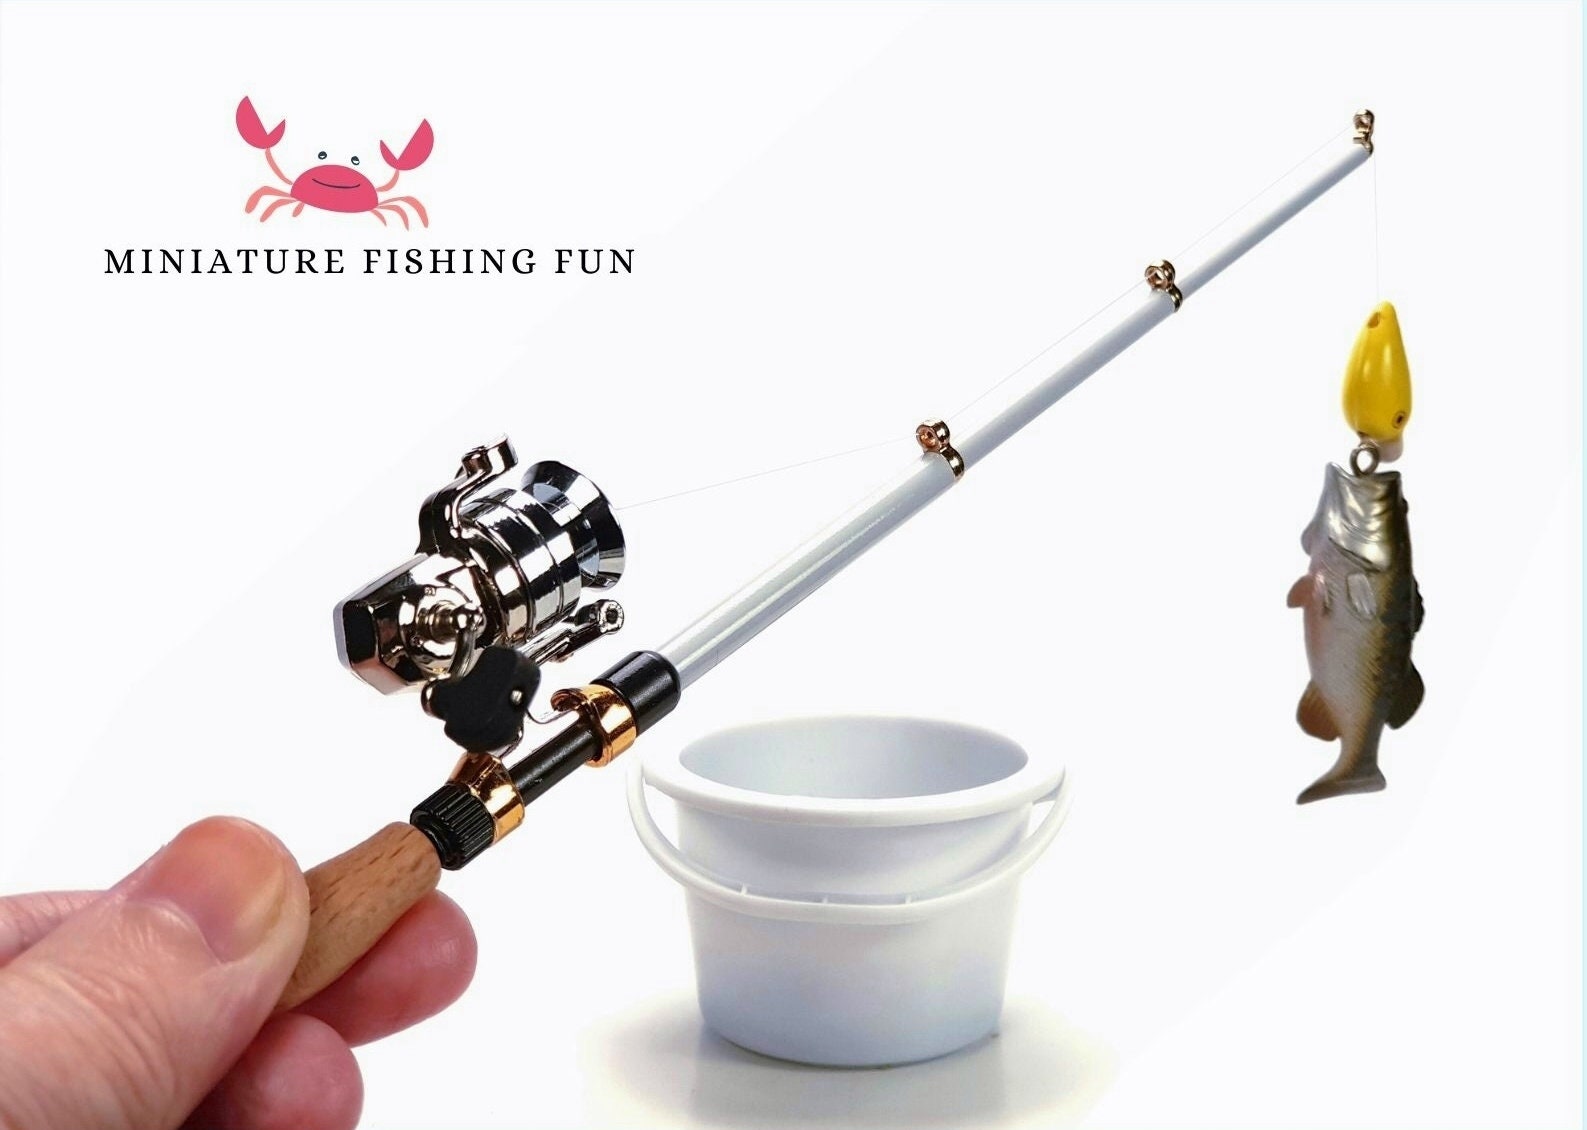 Real Catch Miniature Mini Fishing Gear Mascot Fishing Rod, Reel